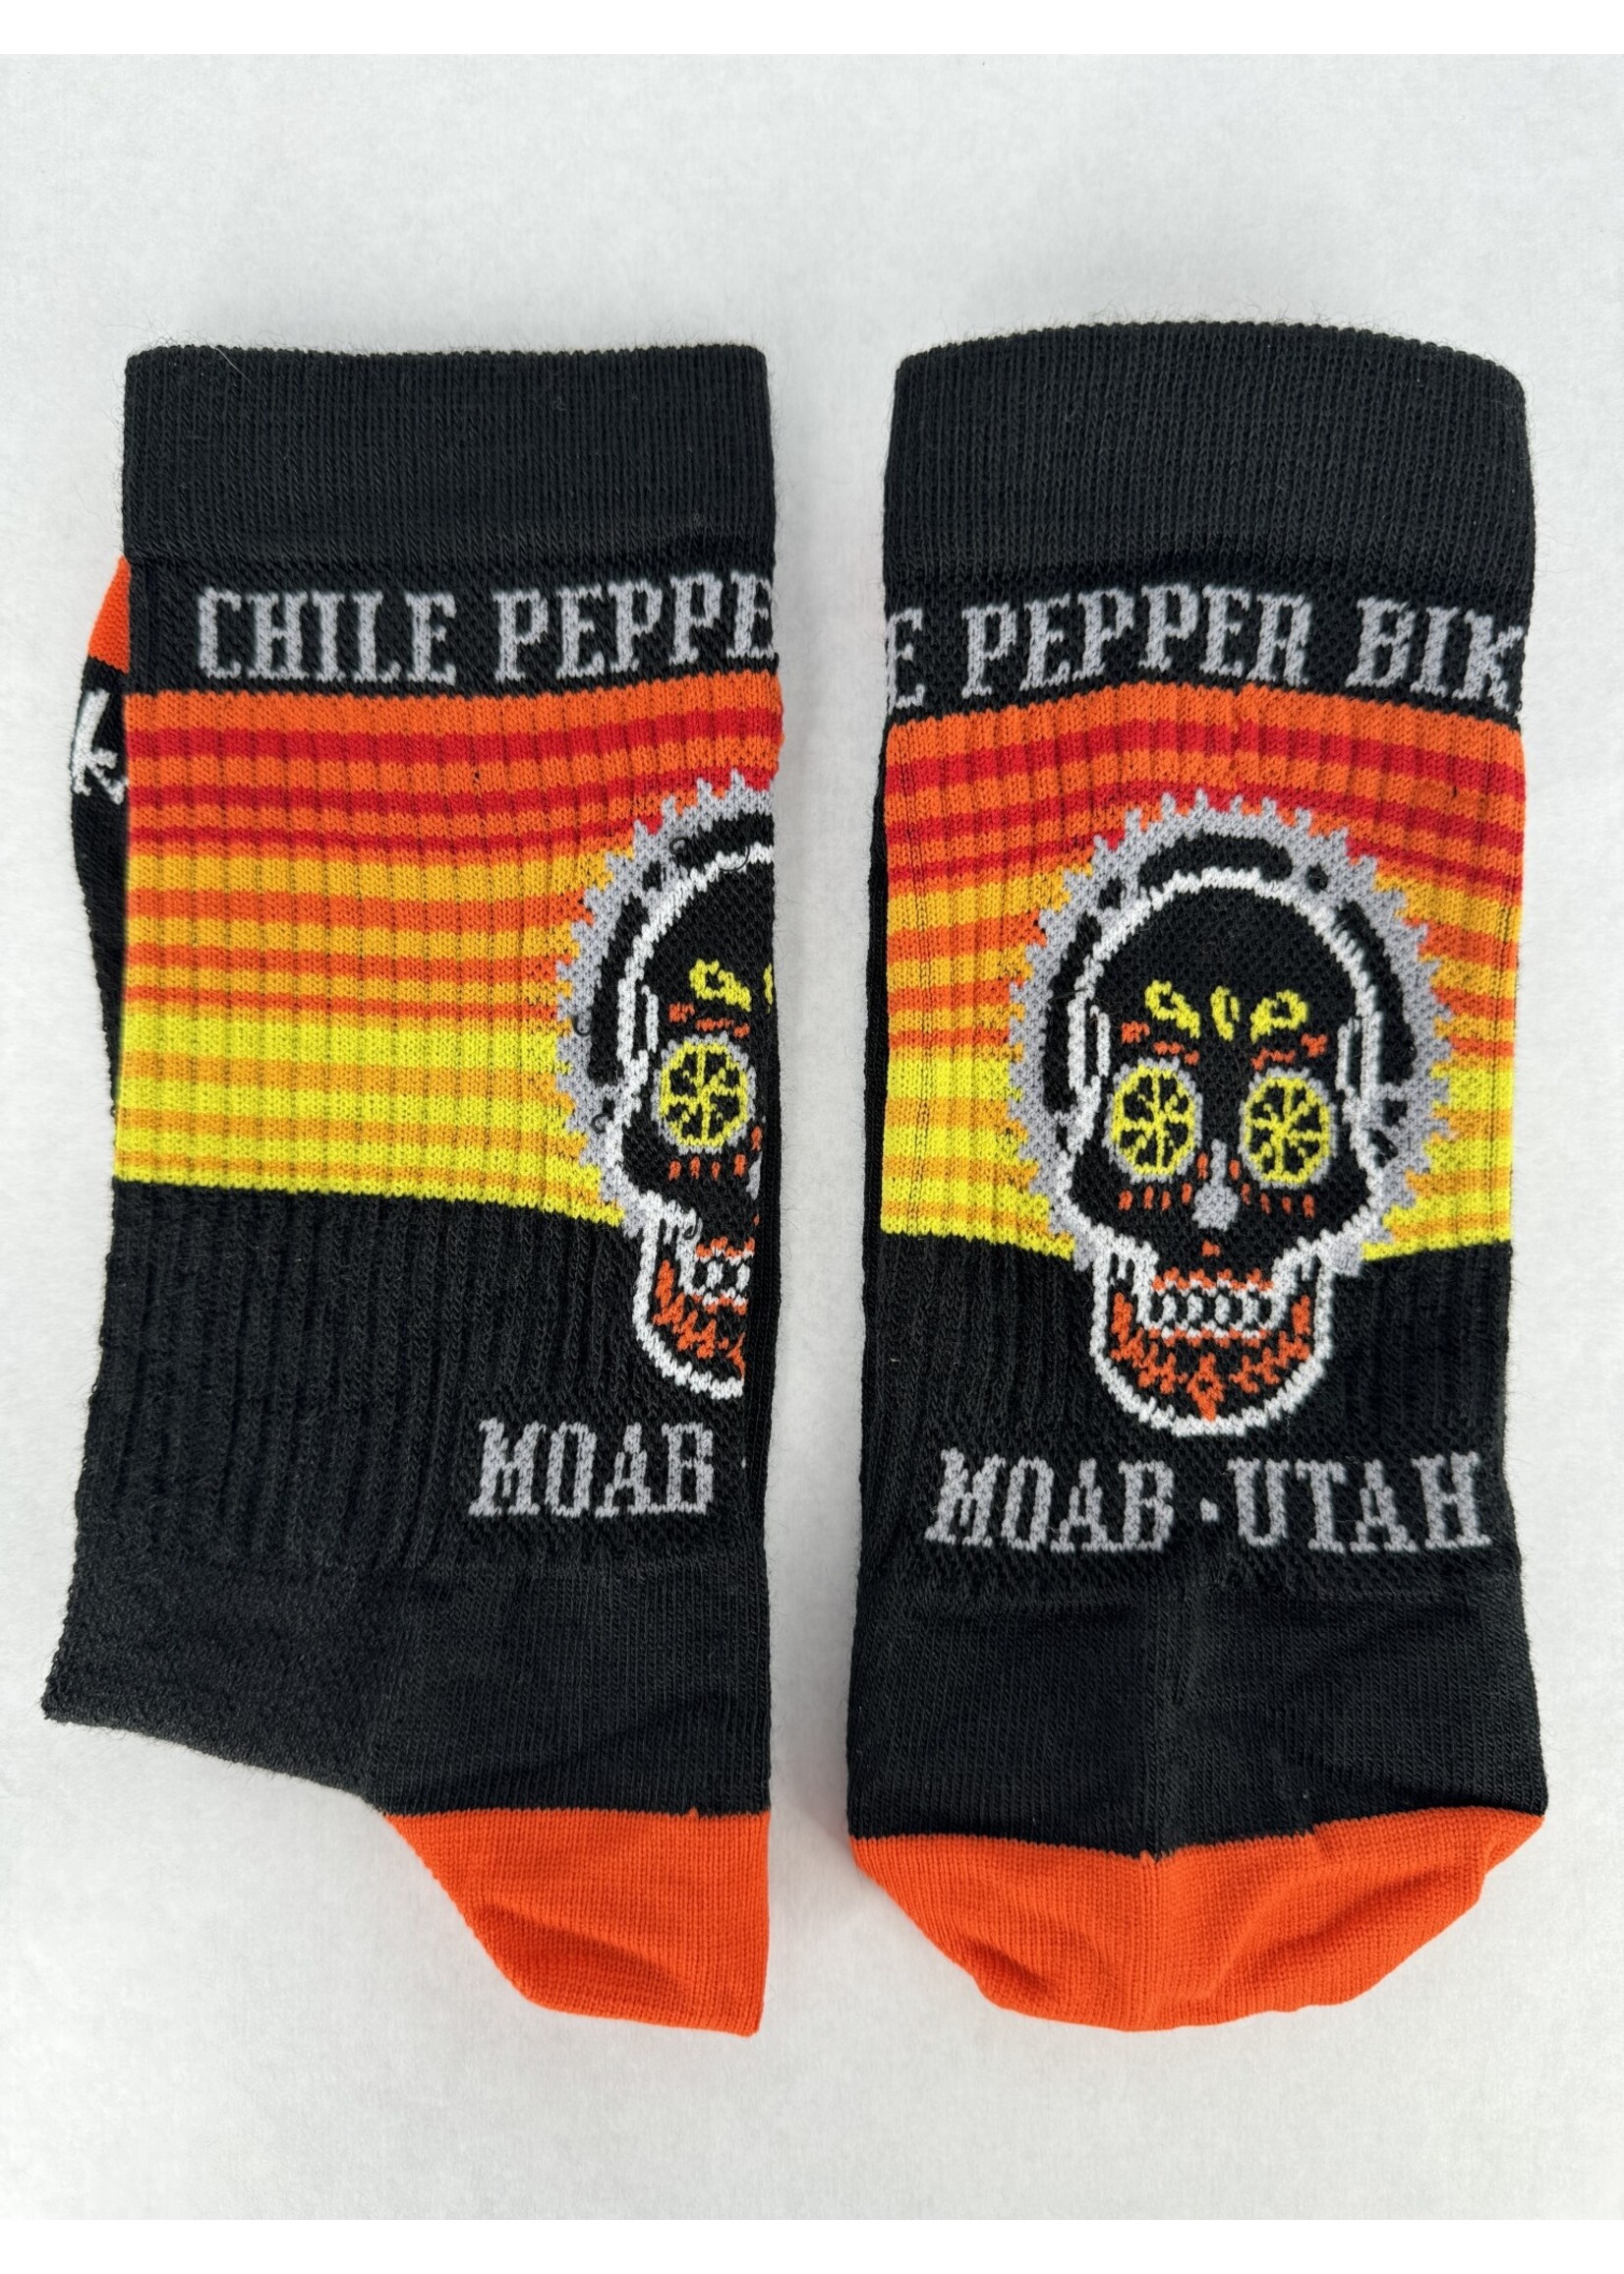 Chile Pepper Chile Dia De Neo Crew Socks